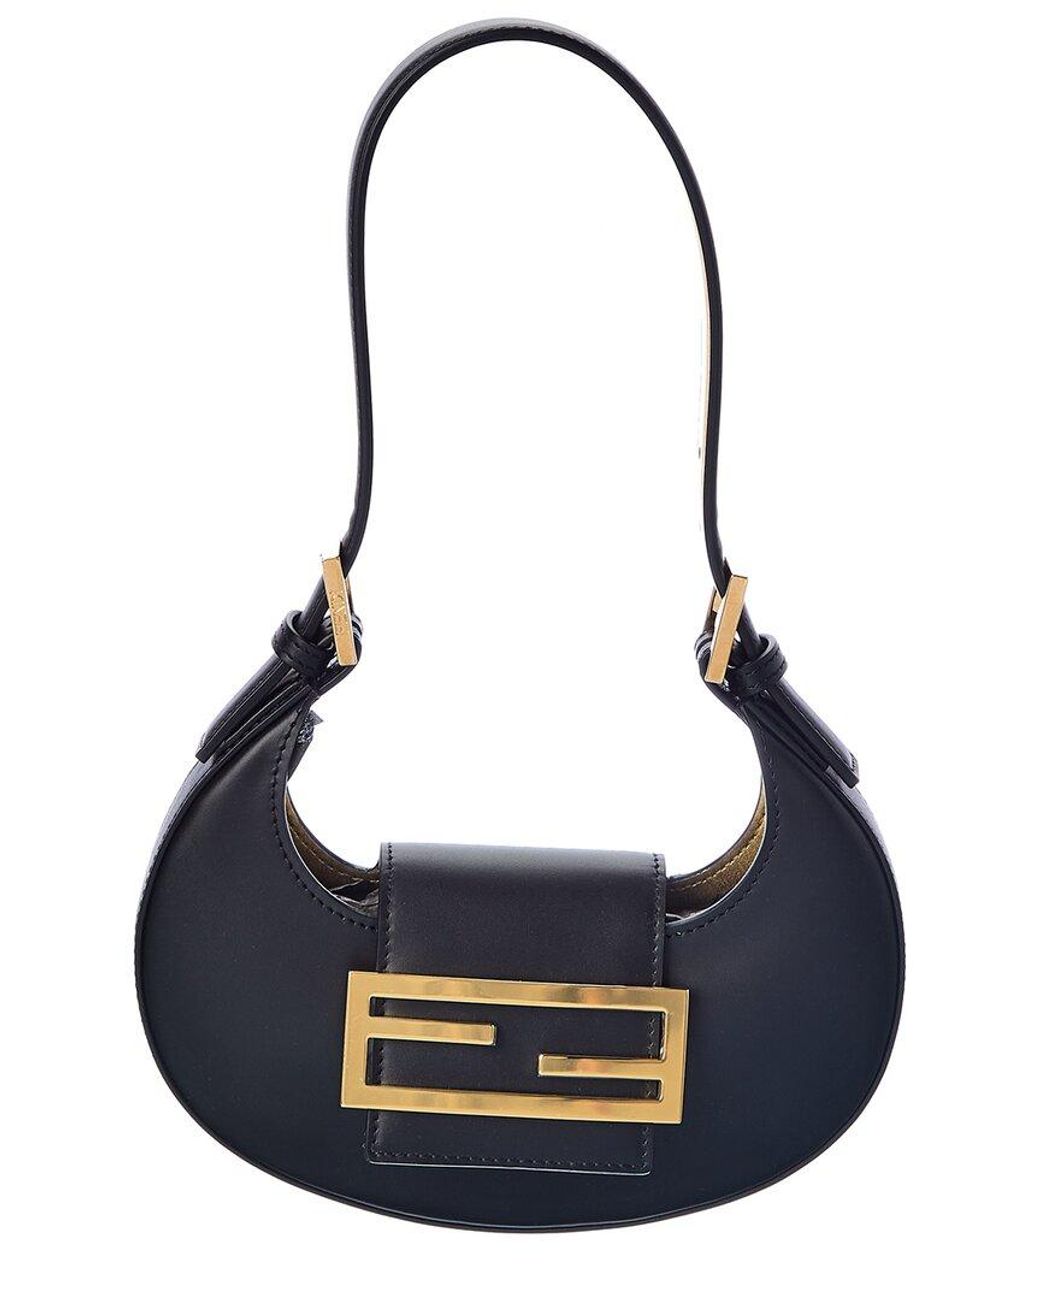 Fendi Cookie Leather Hobo Bag in Black | Lyst